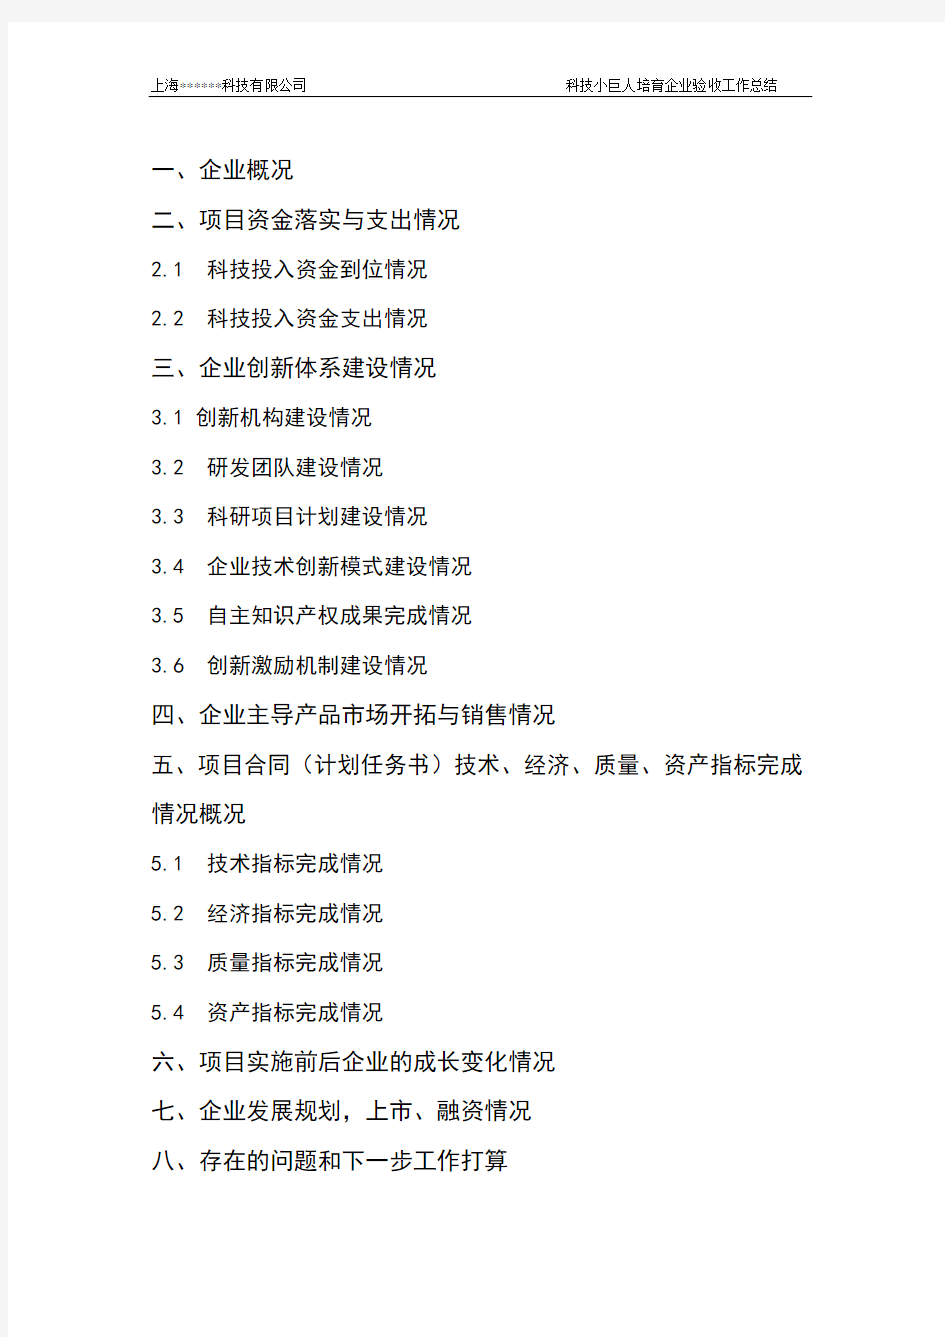 上海市培育型小巨人企业总结报告模版1